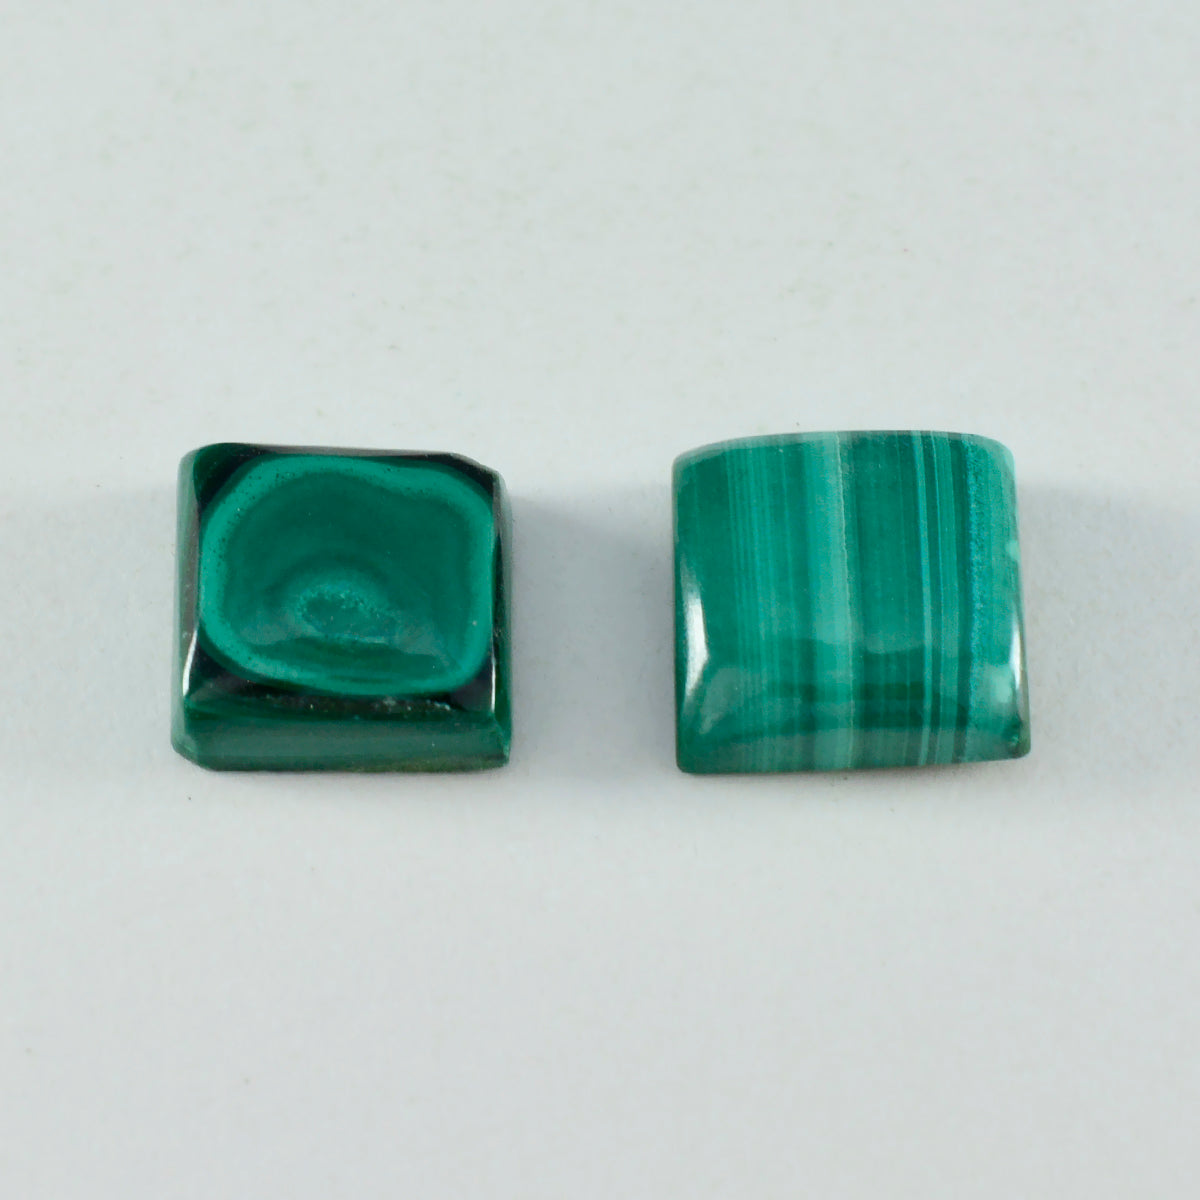 riyogems 1pc cabochon malachite verte 14x14 mm forme carrée a1 qualité gemme